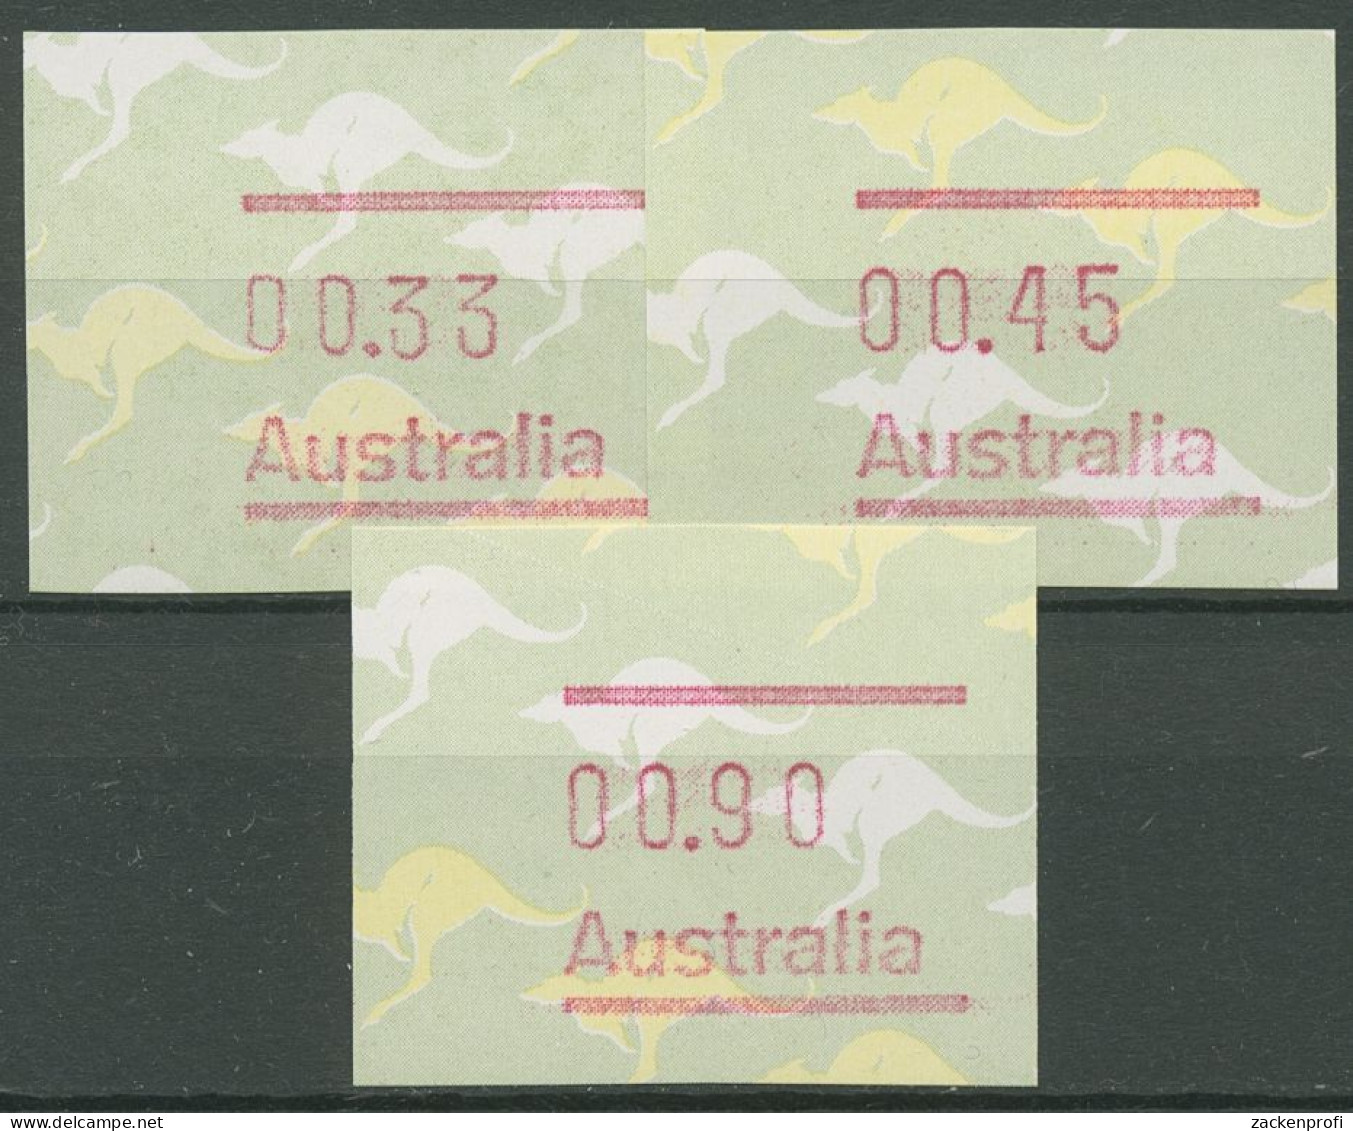 Australien 1985 Känguruh Tastensatz Automatenmarke 3 S1 Postfrisch - Vignette [ATM]